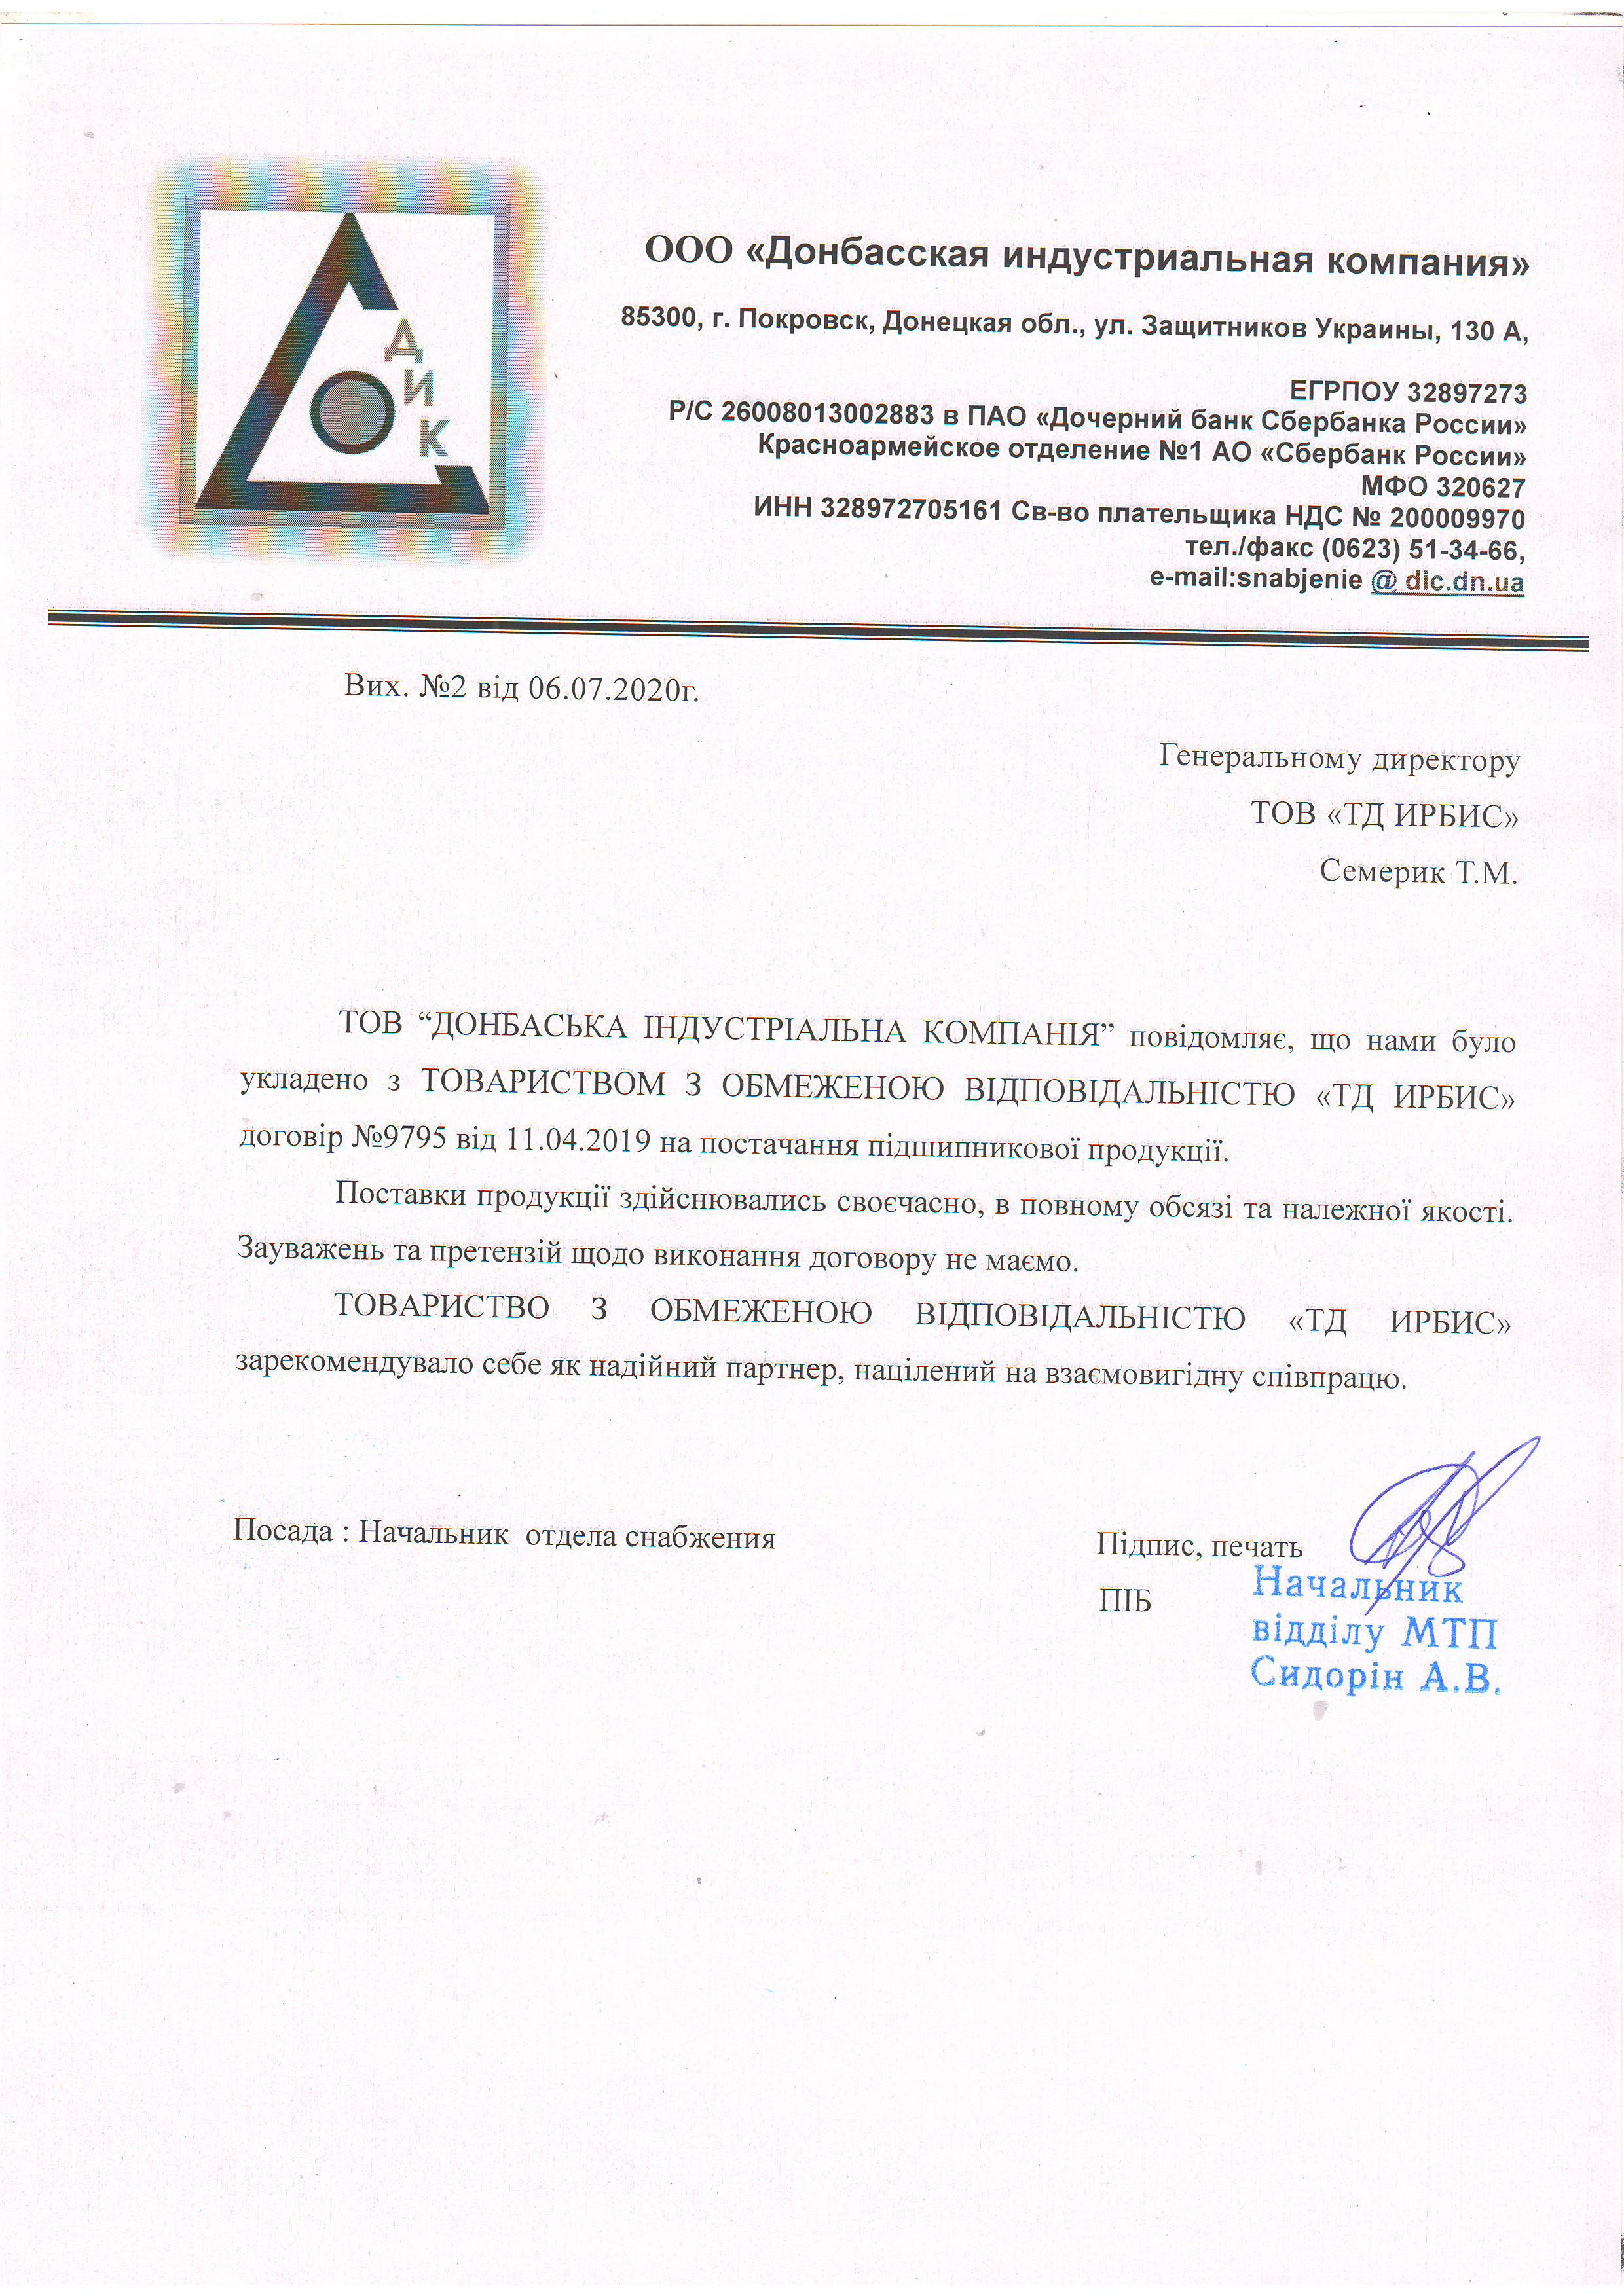 Рекомендаційний лист ТОВ Донбаська індустріальна компанія 06.07.2020